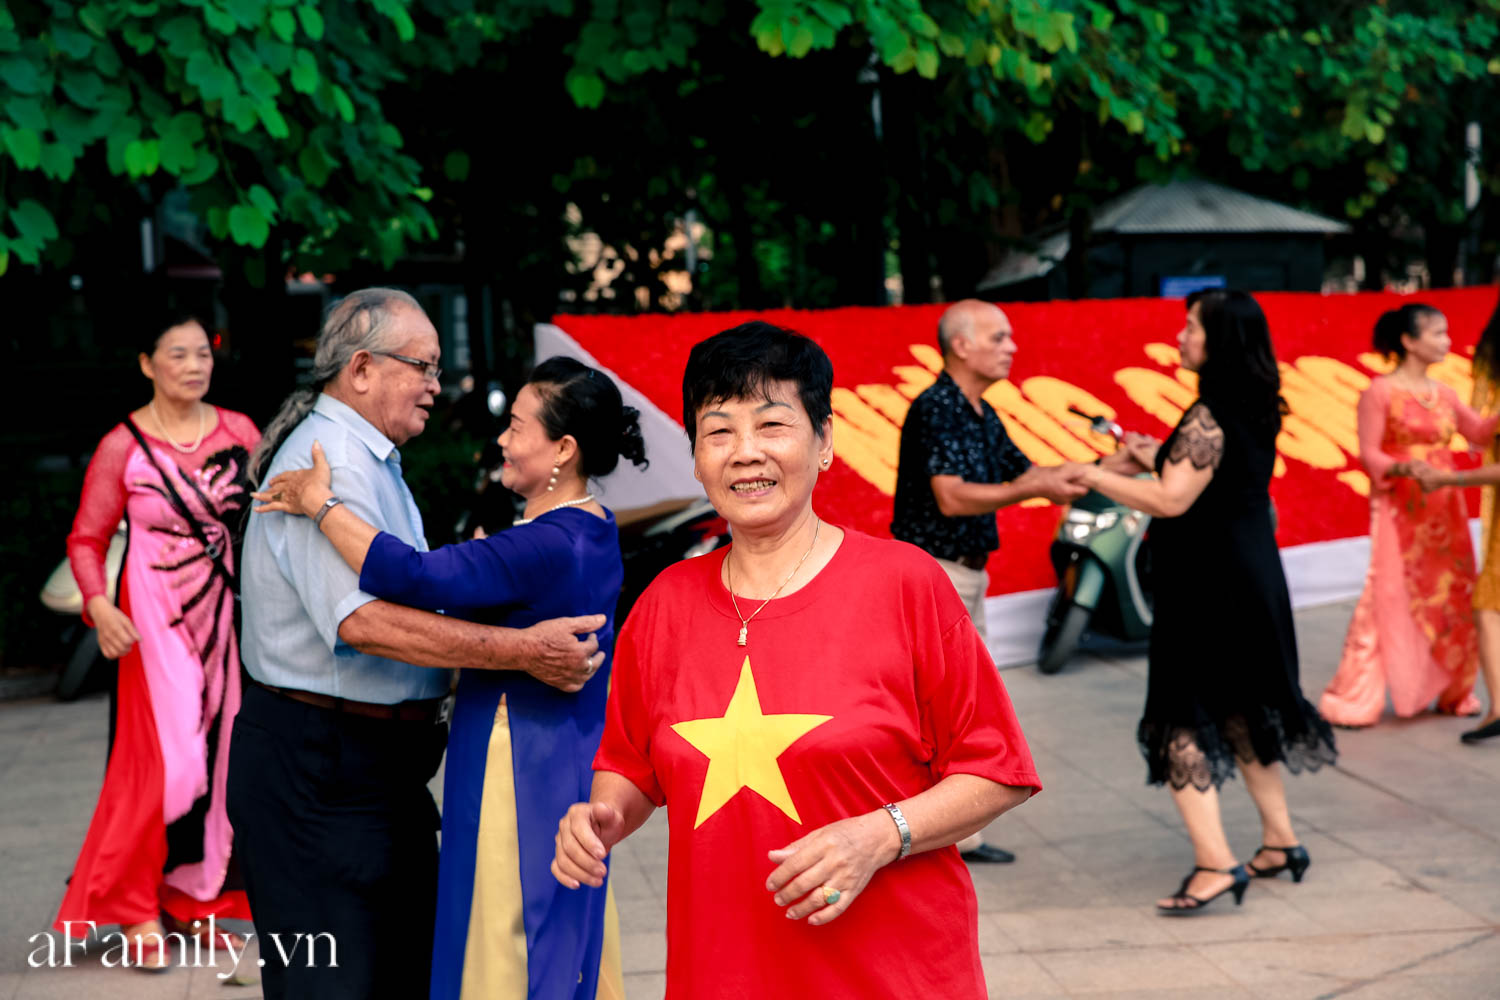 Phố phường vắng thanh, người dân mặc áo cờ Tổ quốc ra đường biểu diễn văn nghệ ngày Quốc khánh - Ảnh 8.